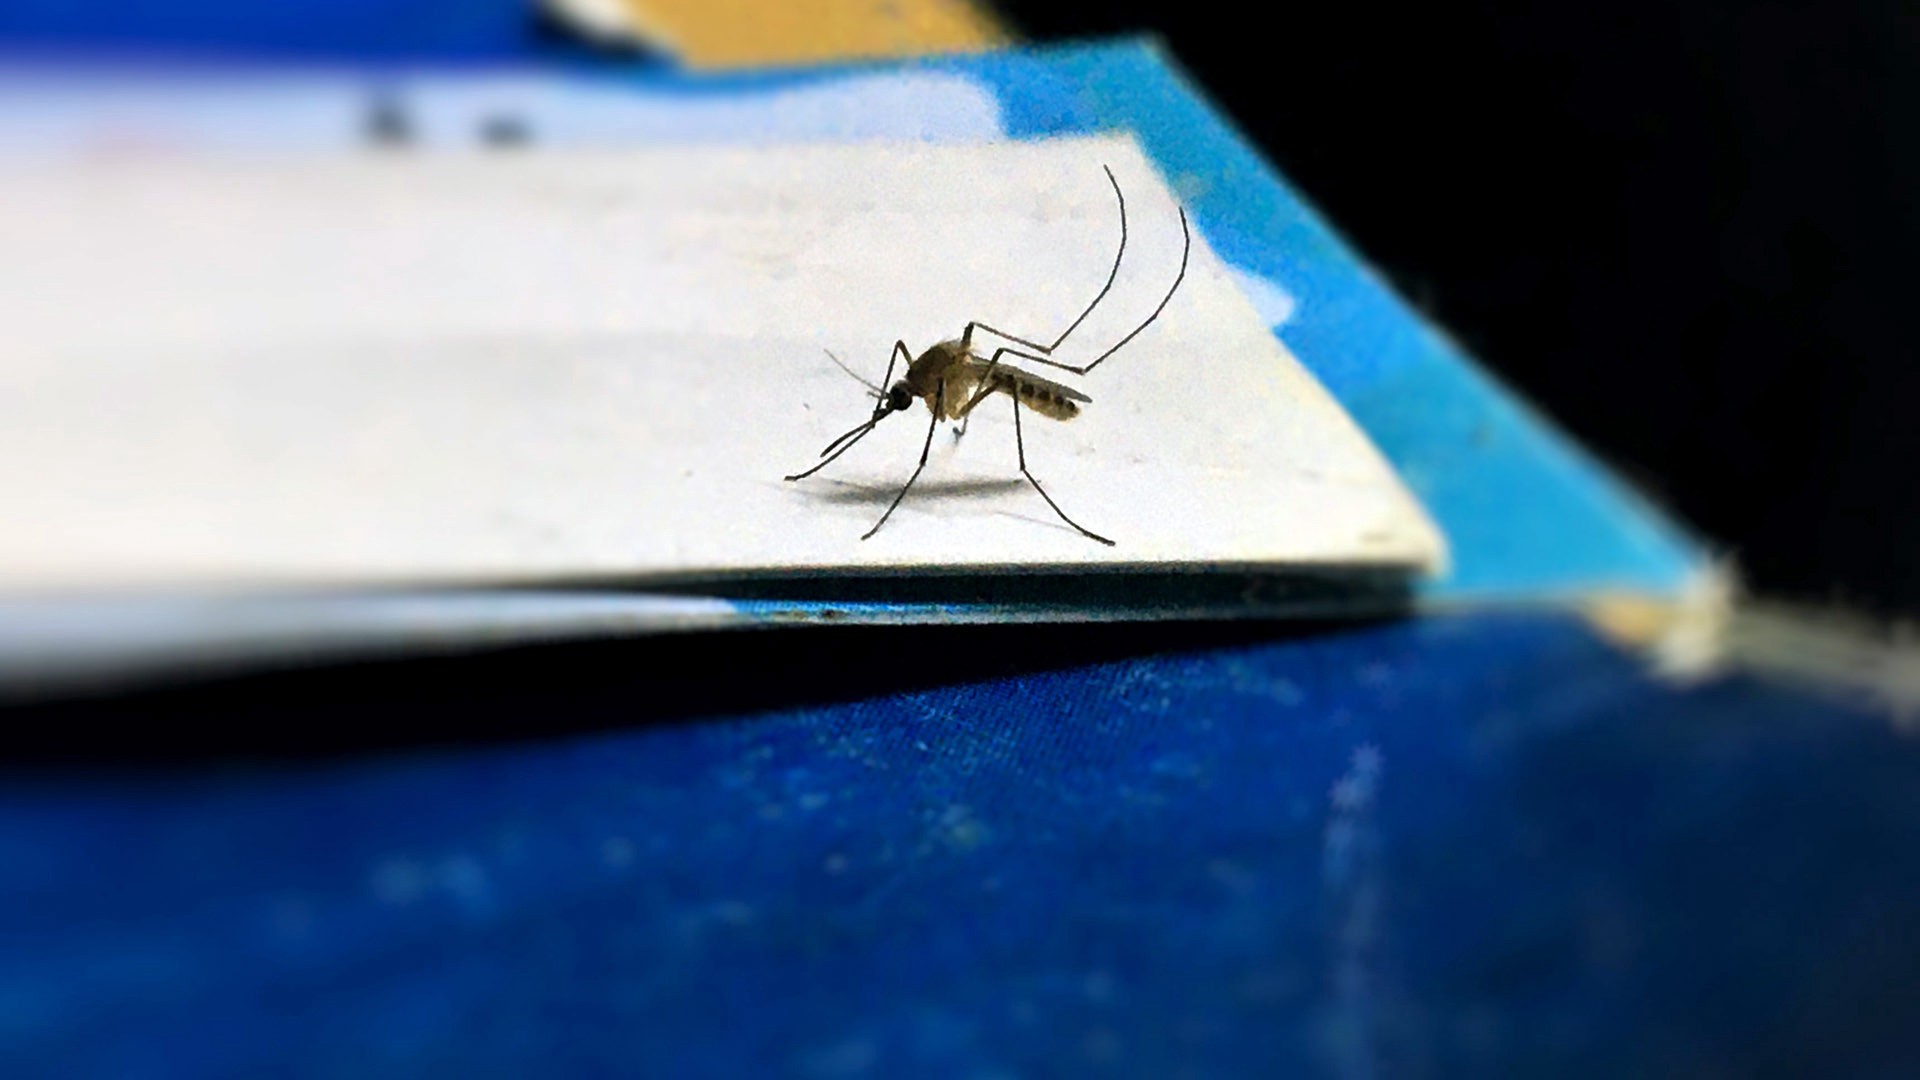 Терапевт рассказала, кому особенно опасно расчёсывать комариные укусы